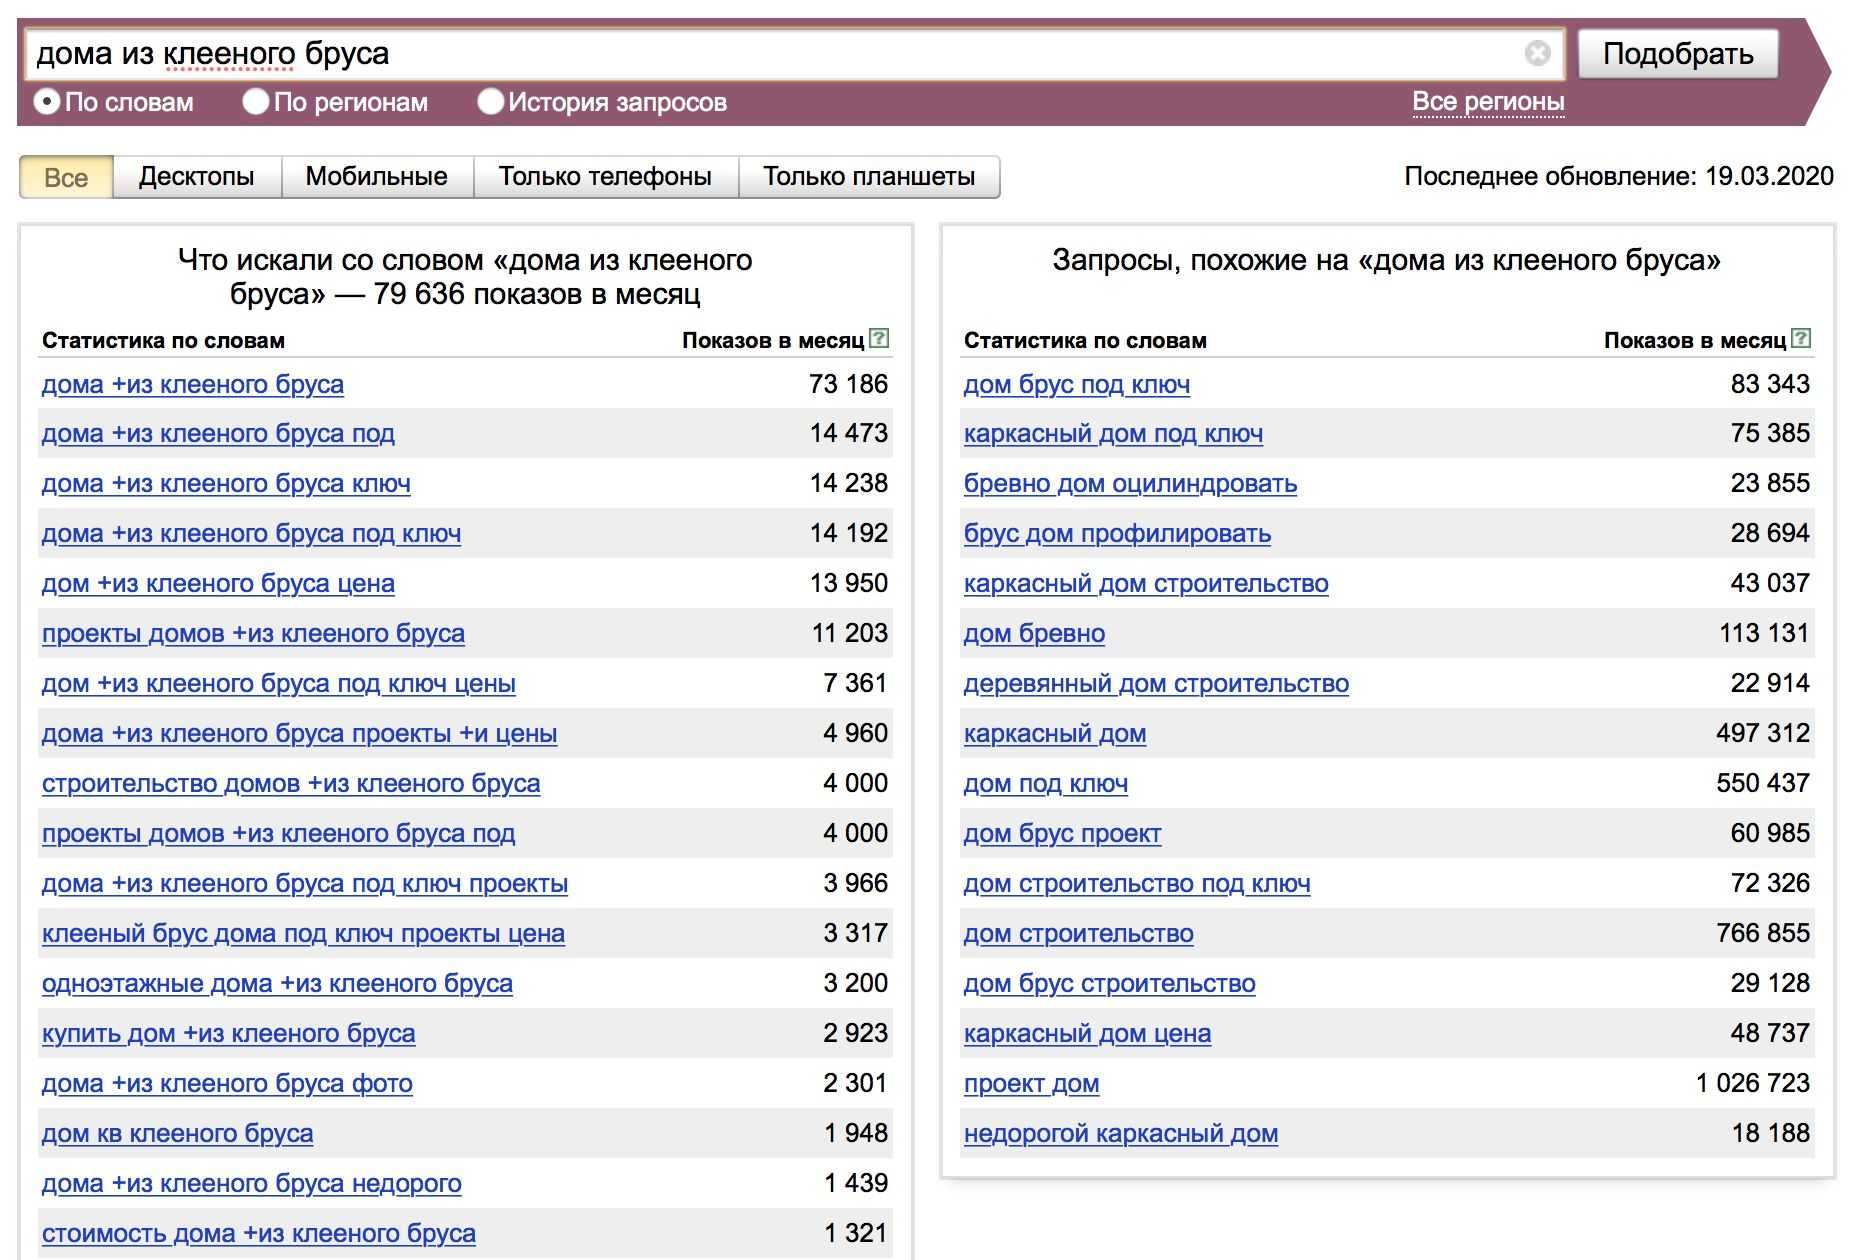 Какие последние запросы. Популярные запросы в Яндексе. Вордстат. Статистика запросов в интернете.